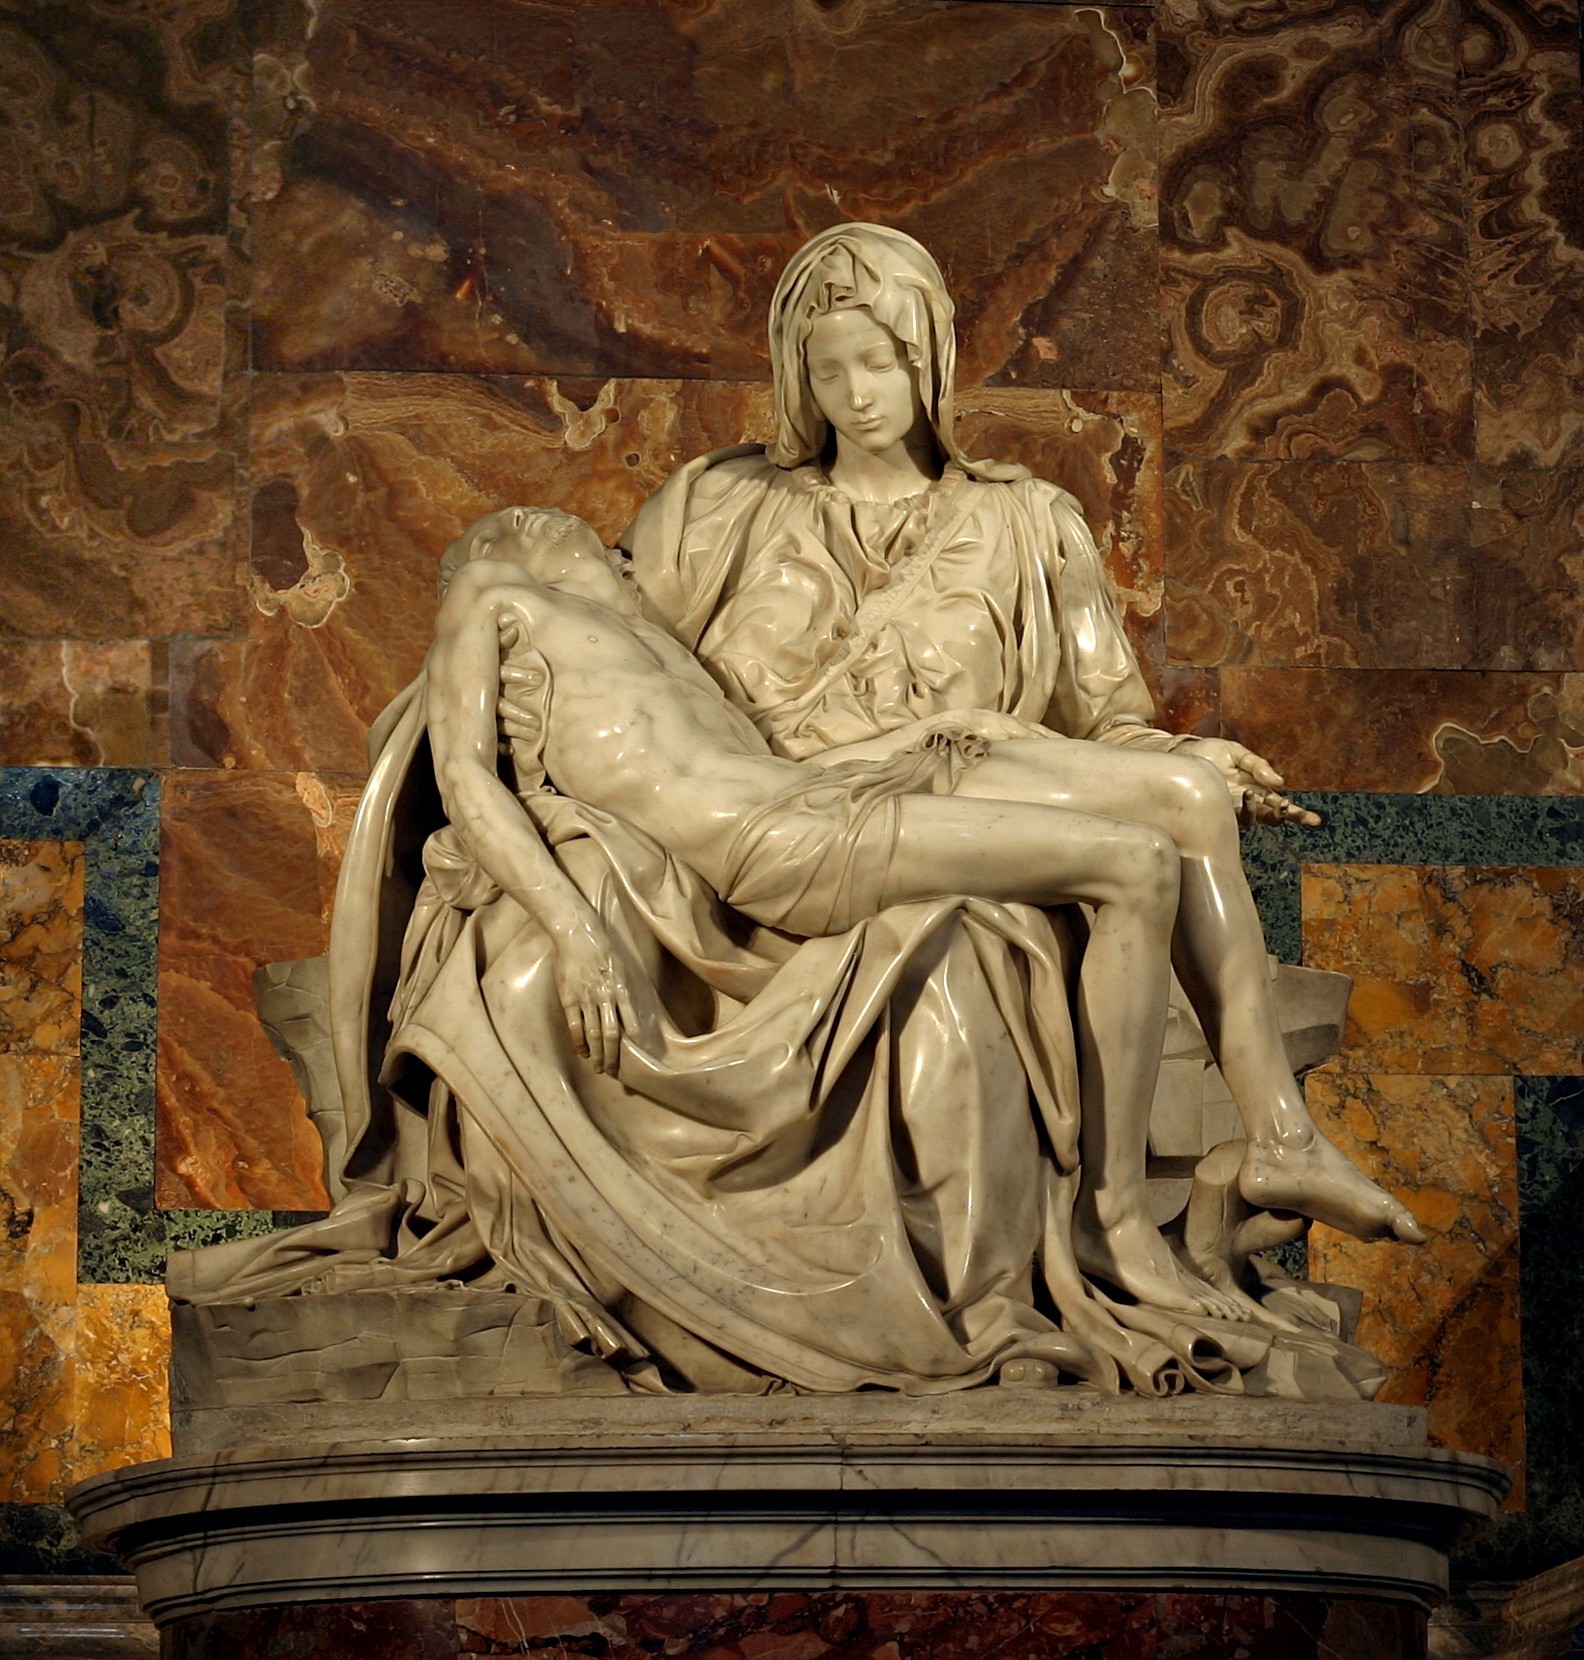 Pietà by  Michelangelo - 1498–1499 - 174 cm × 195 cm St. Peter's Basilica, Vatican City